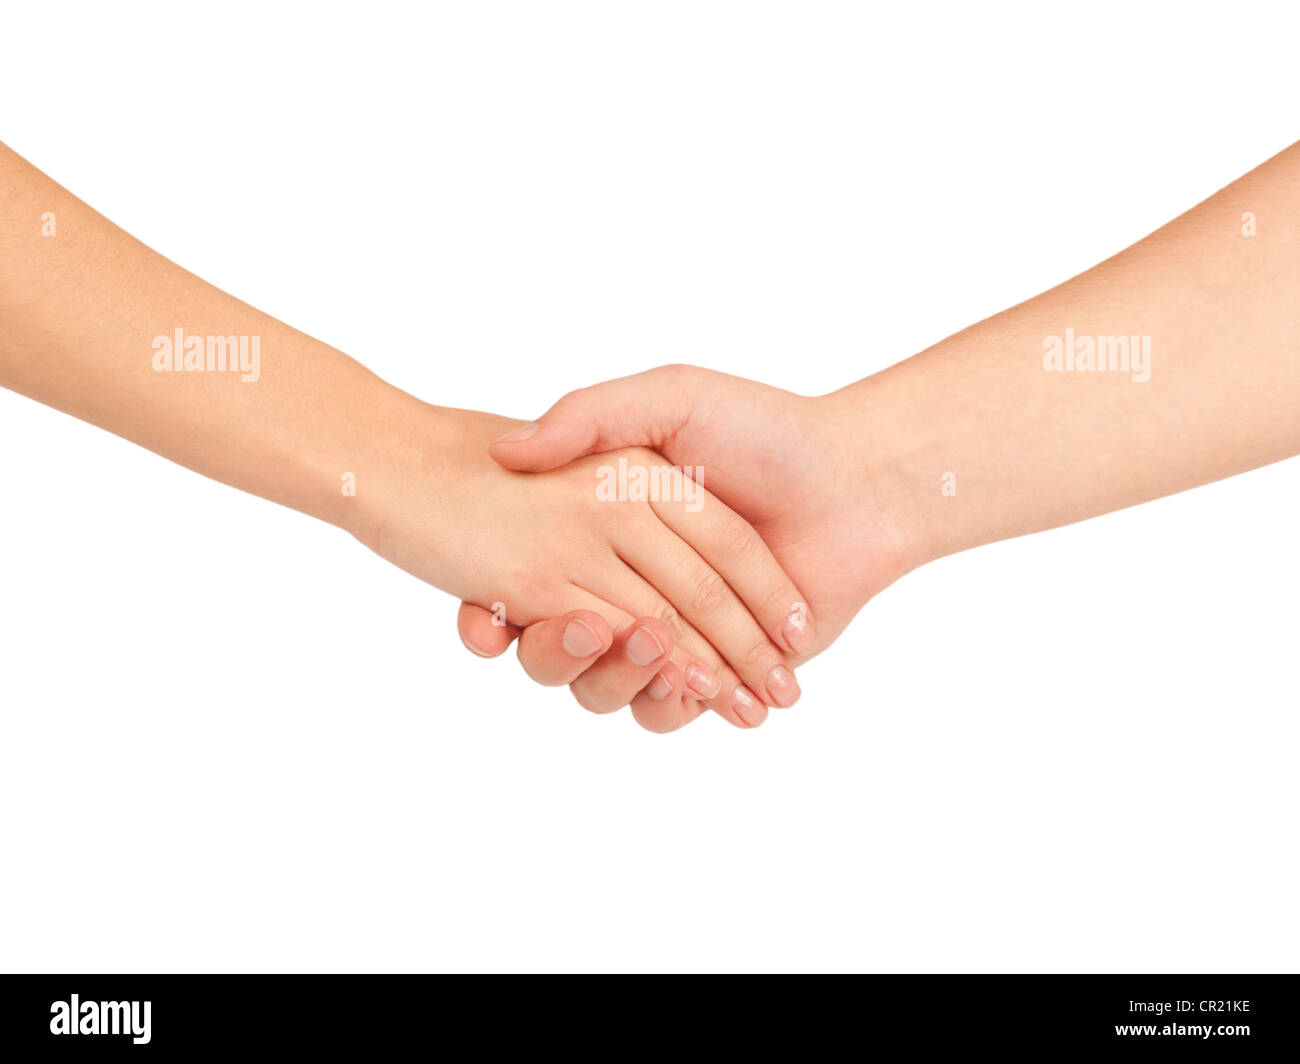 Händeschütteln von zwei Menschen, Mann und Frau, isoliert auf weiss. Stockfoto